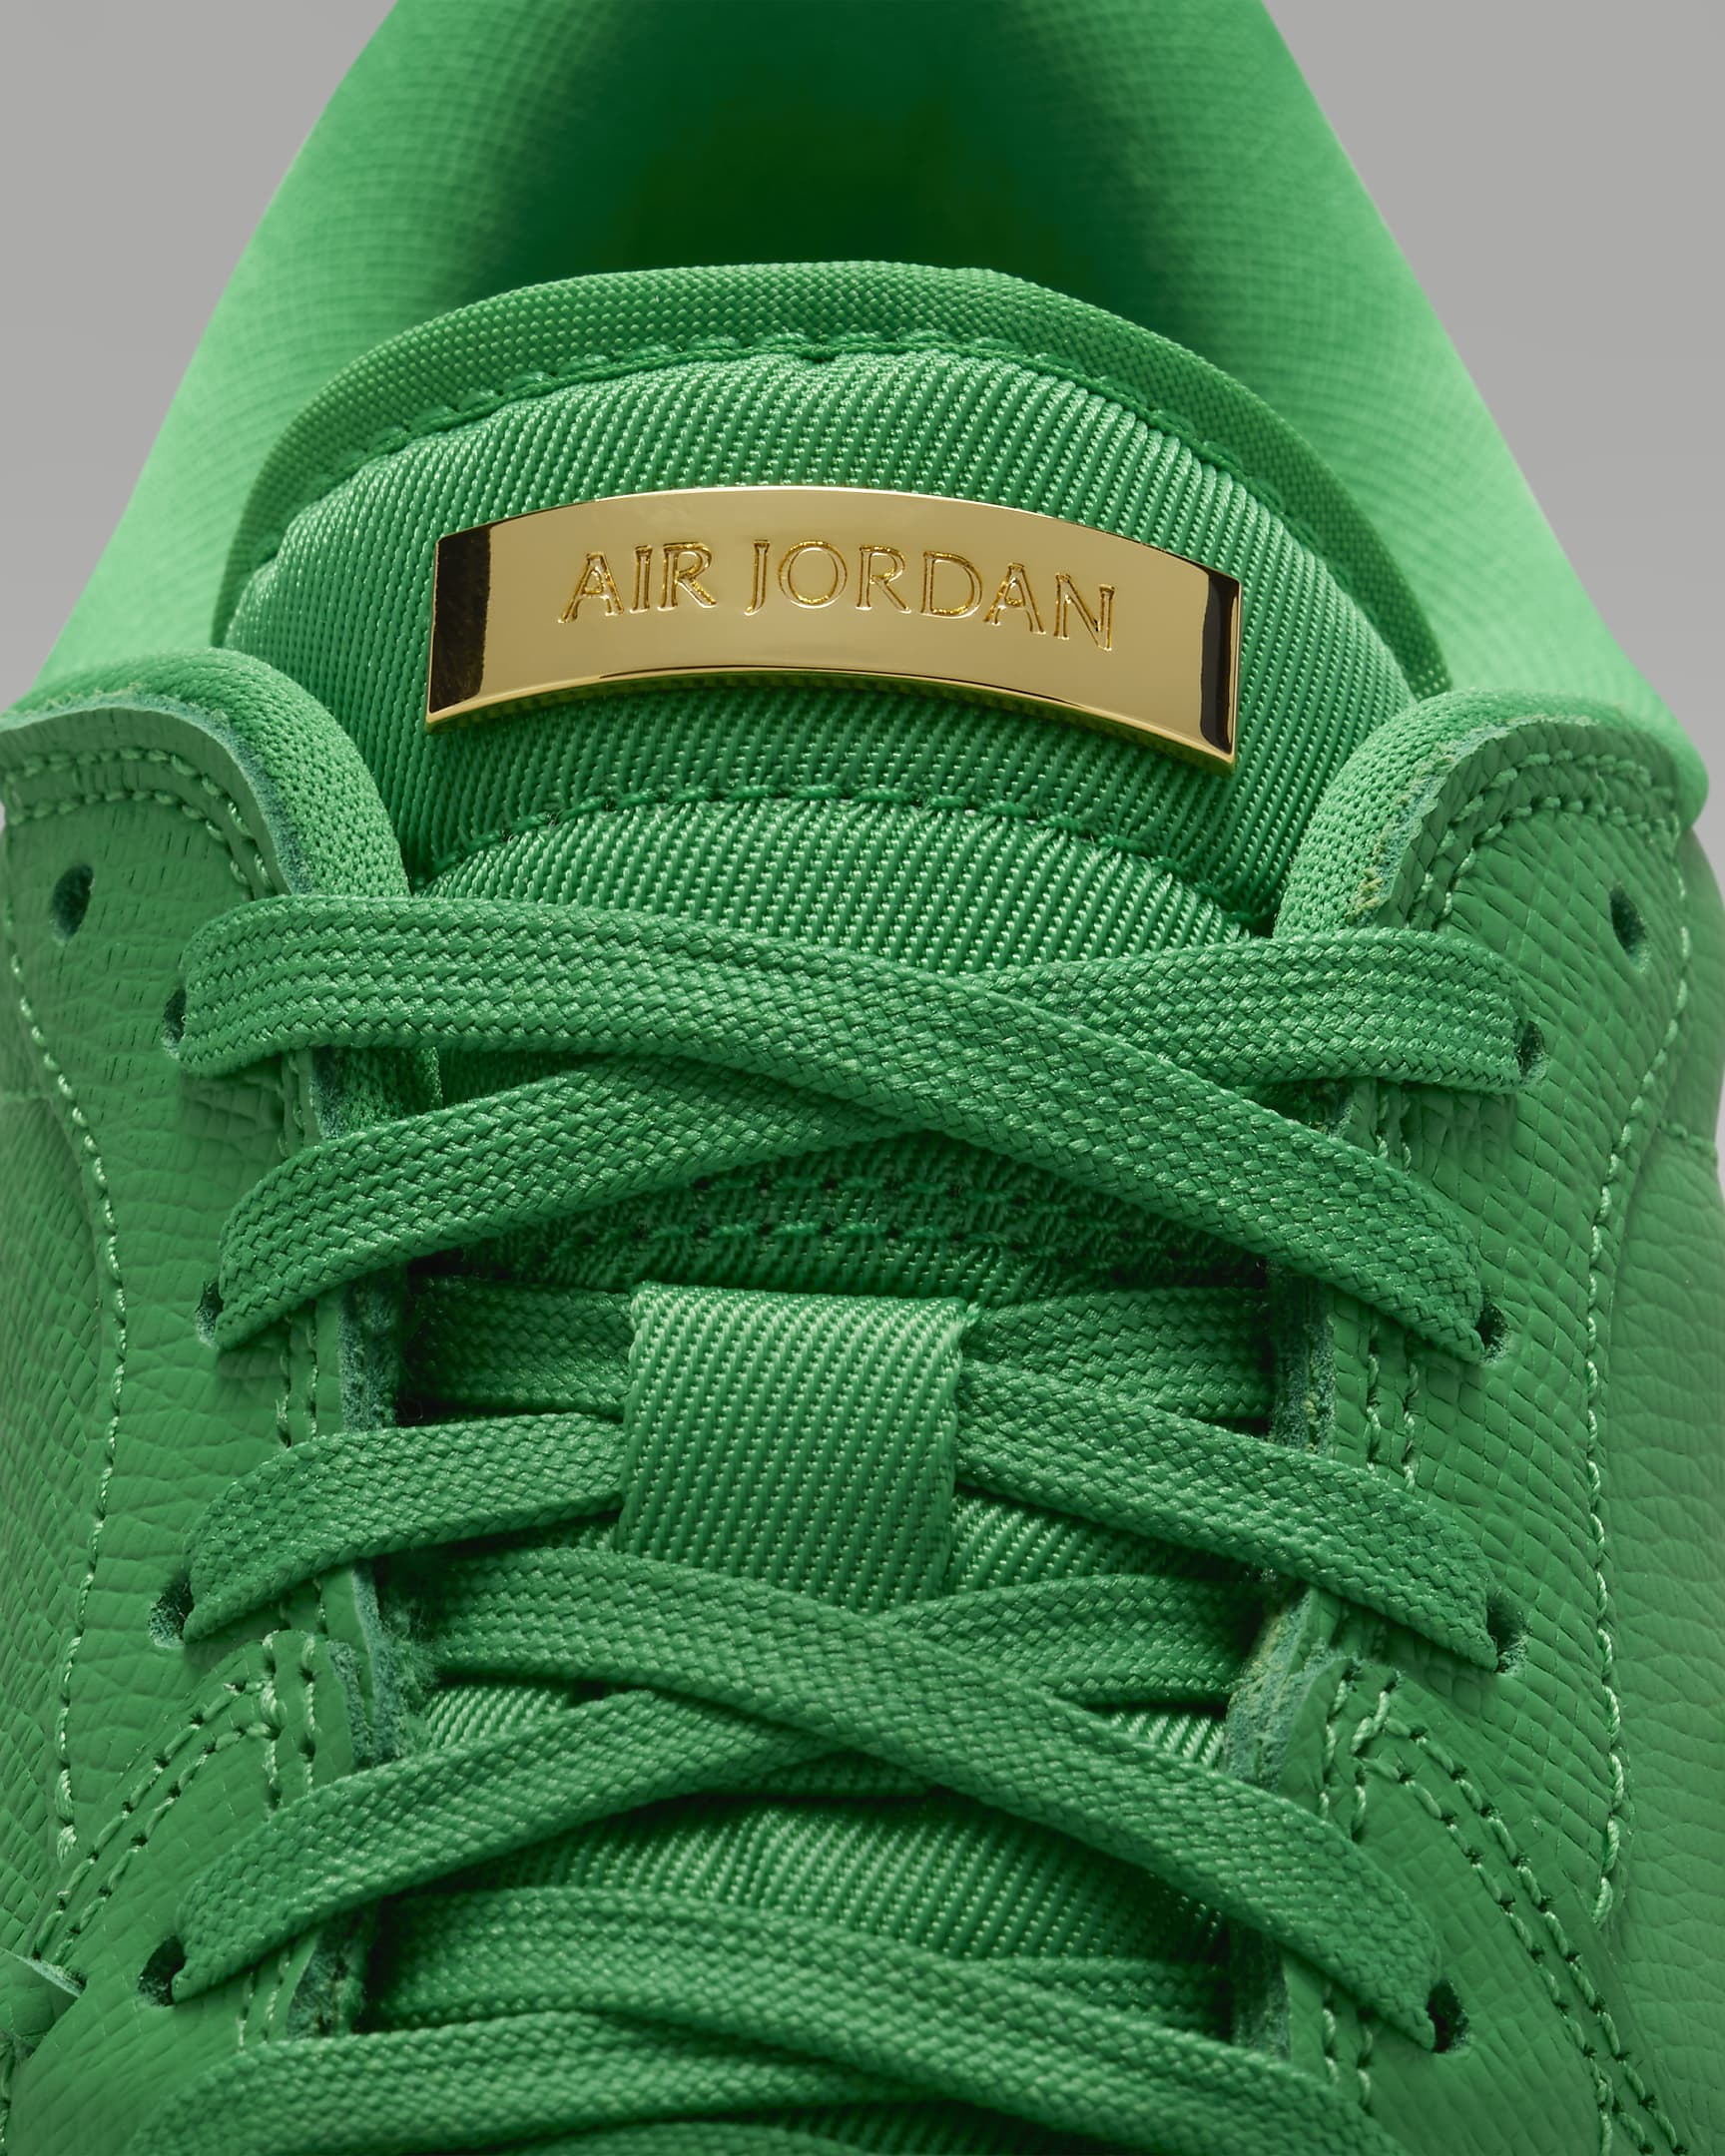 Air Jordan 1 Low Method of Make Women's Shoes. Nike.com